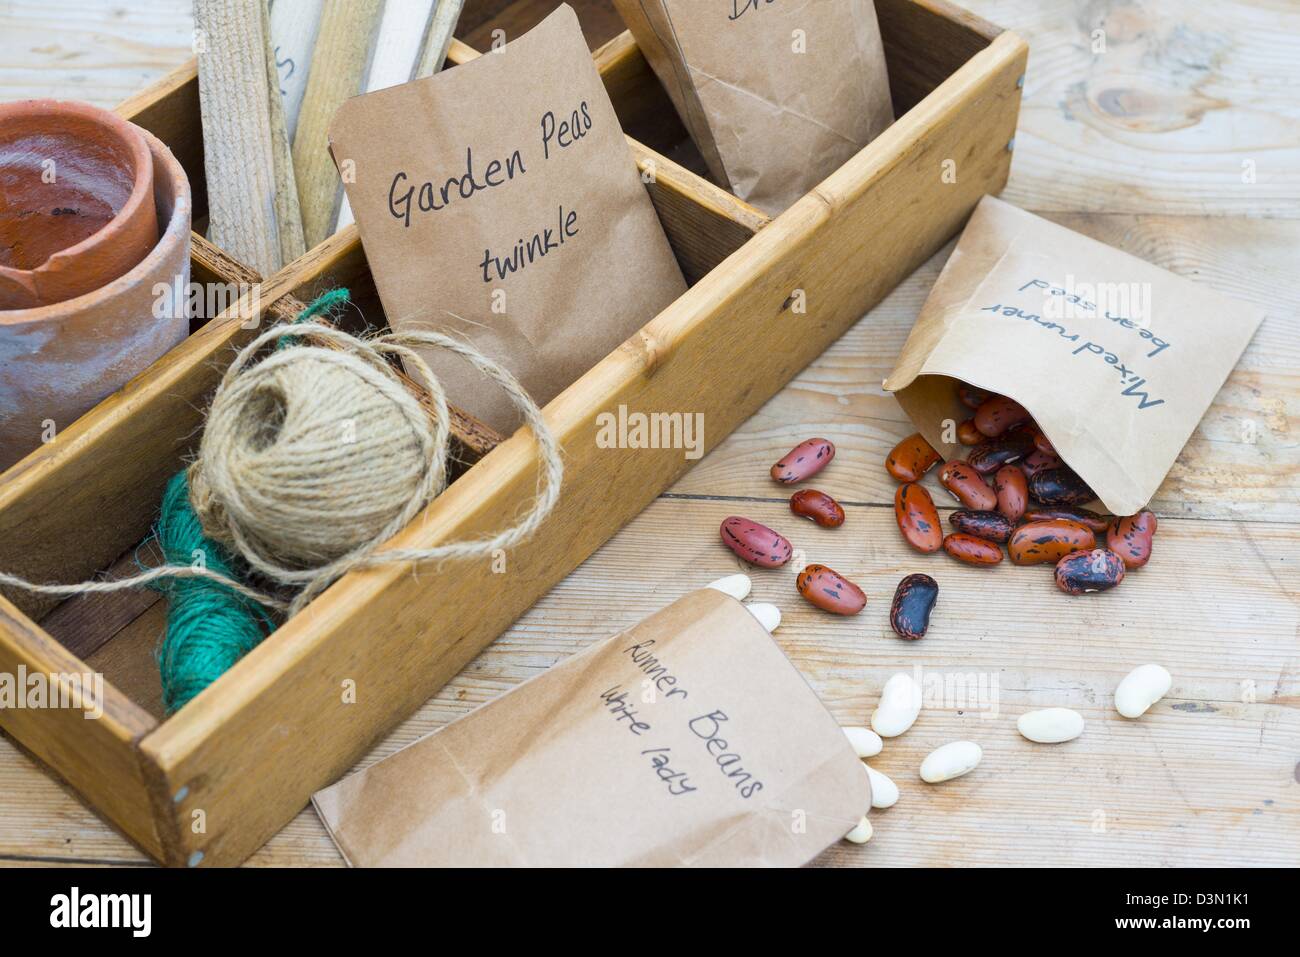 Banc d'empotage printemps Nature morte avec les semences dans des paquets et d'articles de jardinage Banque D'Images